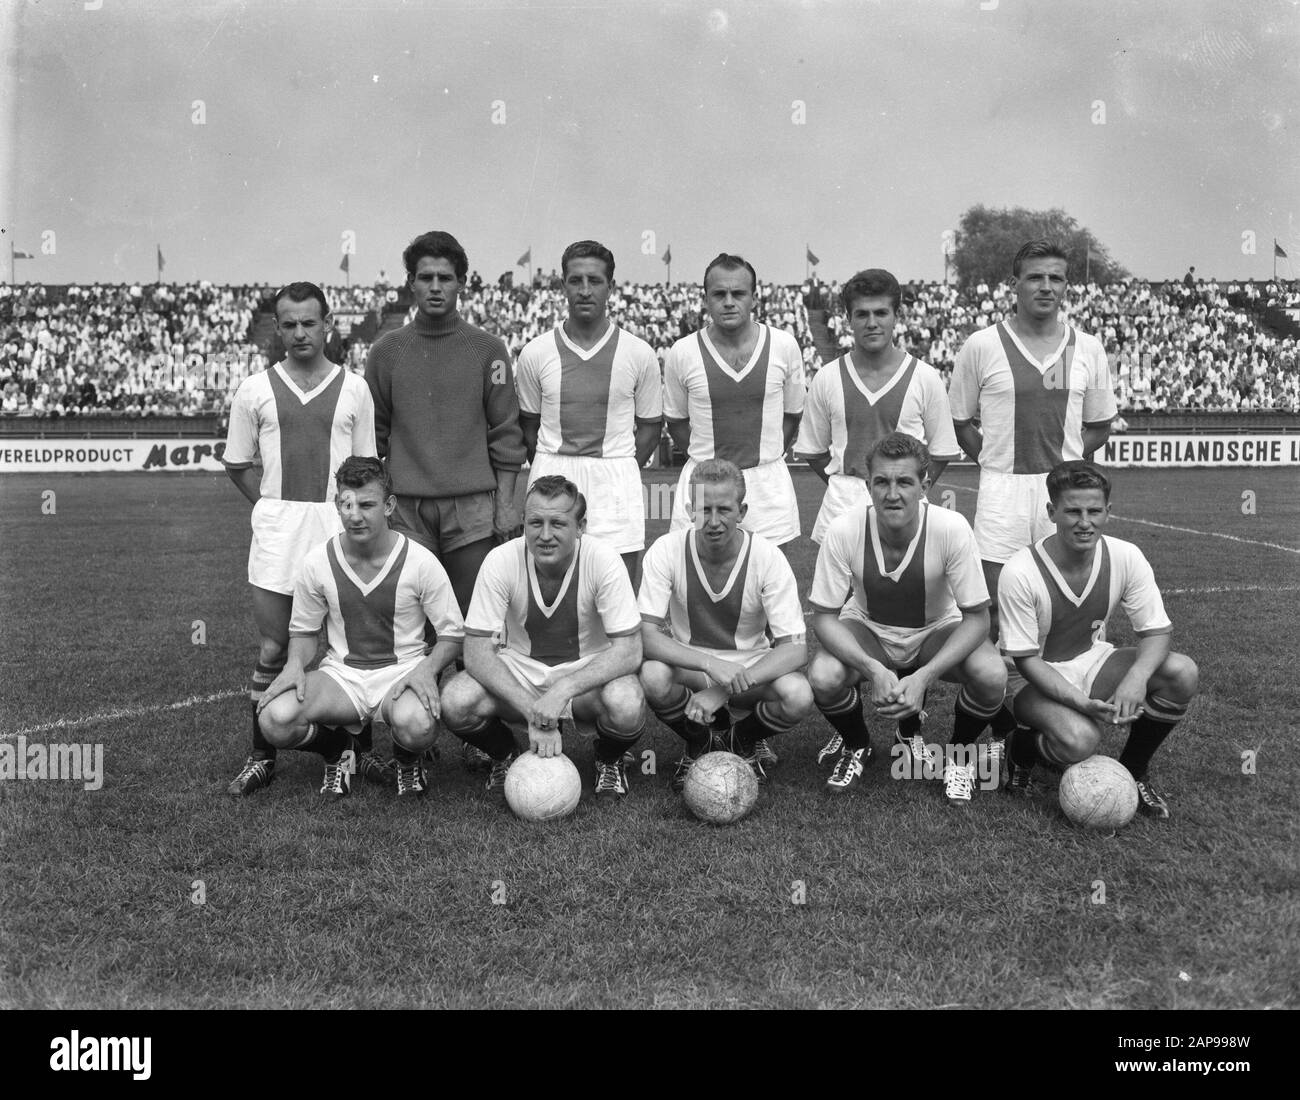 Ajax versus NAC 3-0, team of Ajax Date: 23 August 1959 Stock Photo